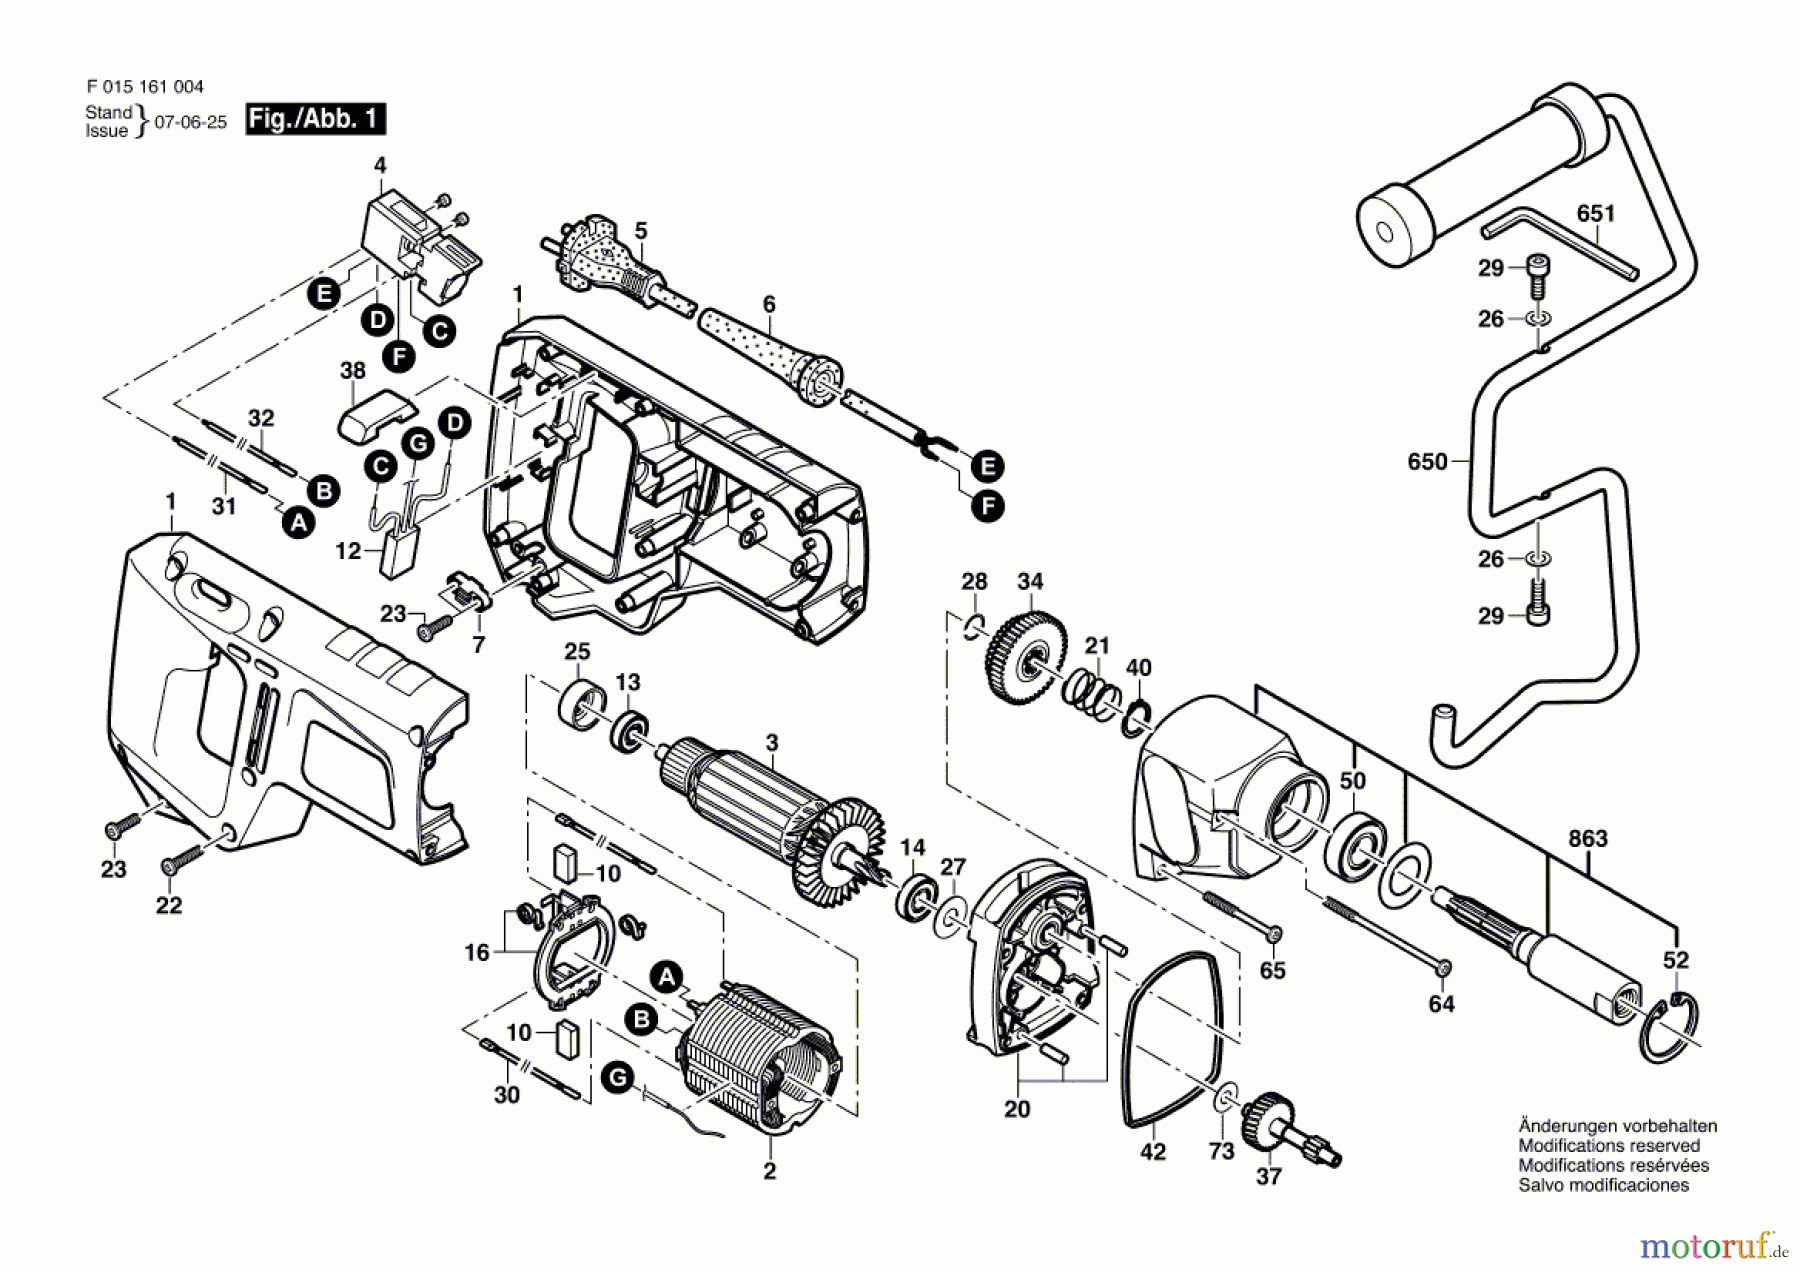  Bosch Werkzeug Gw-Rührwerk 1610 Seite 1